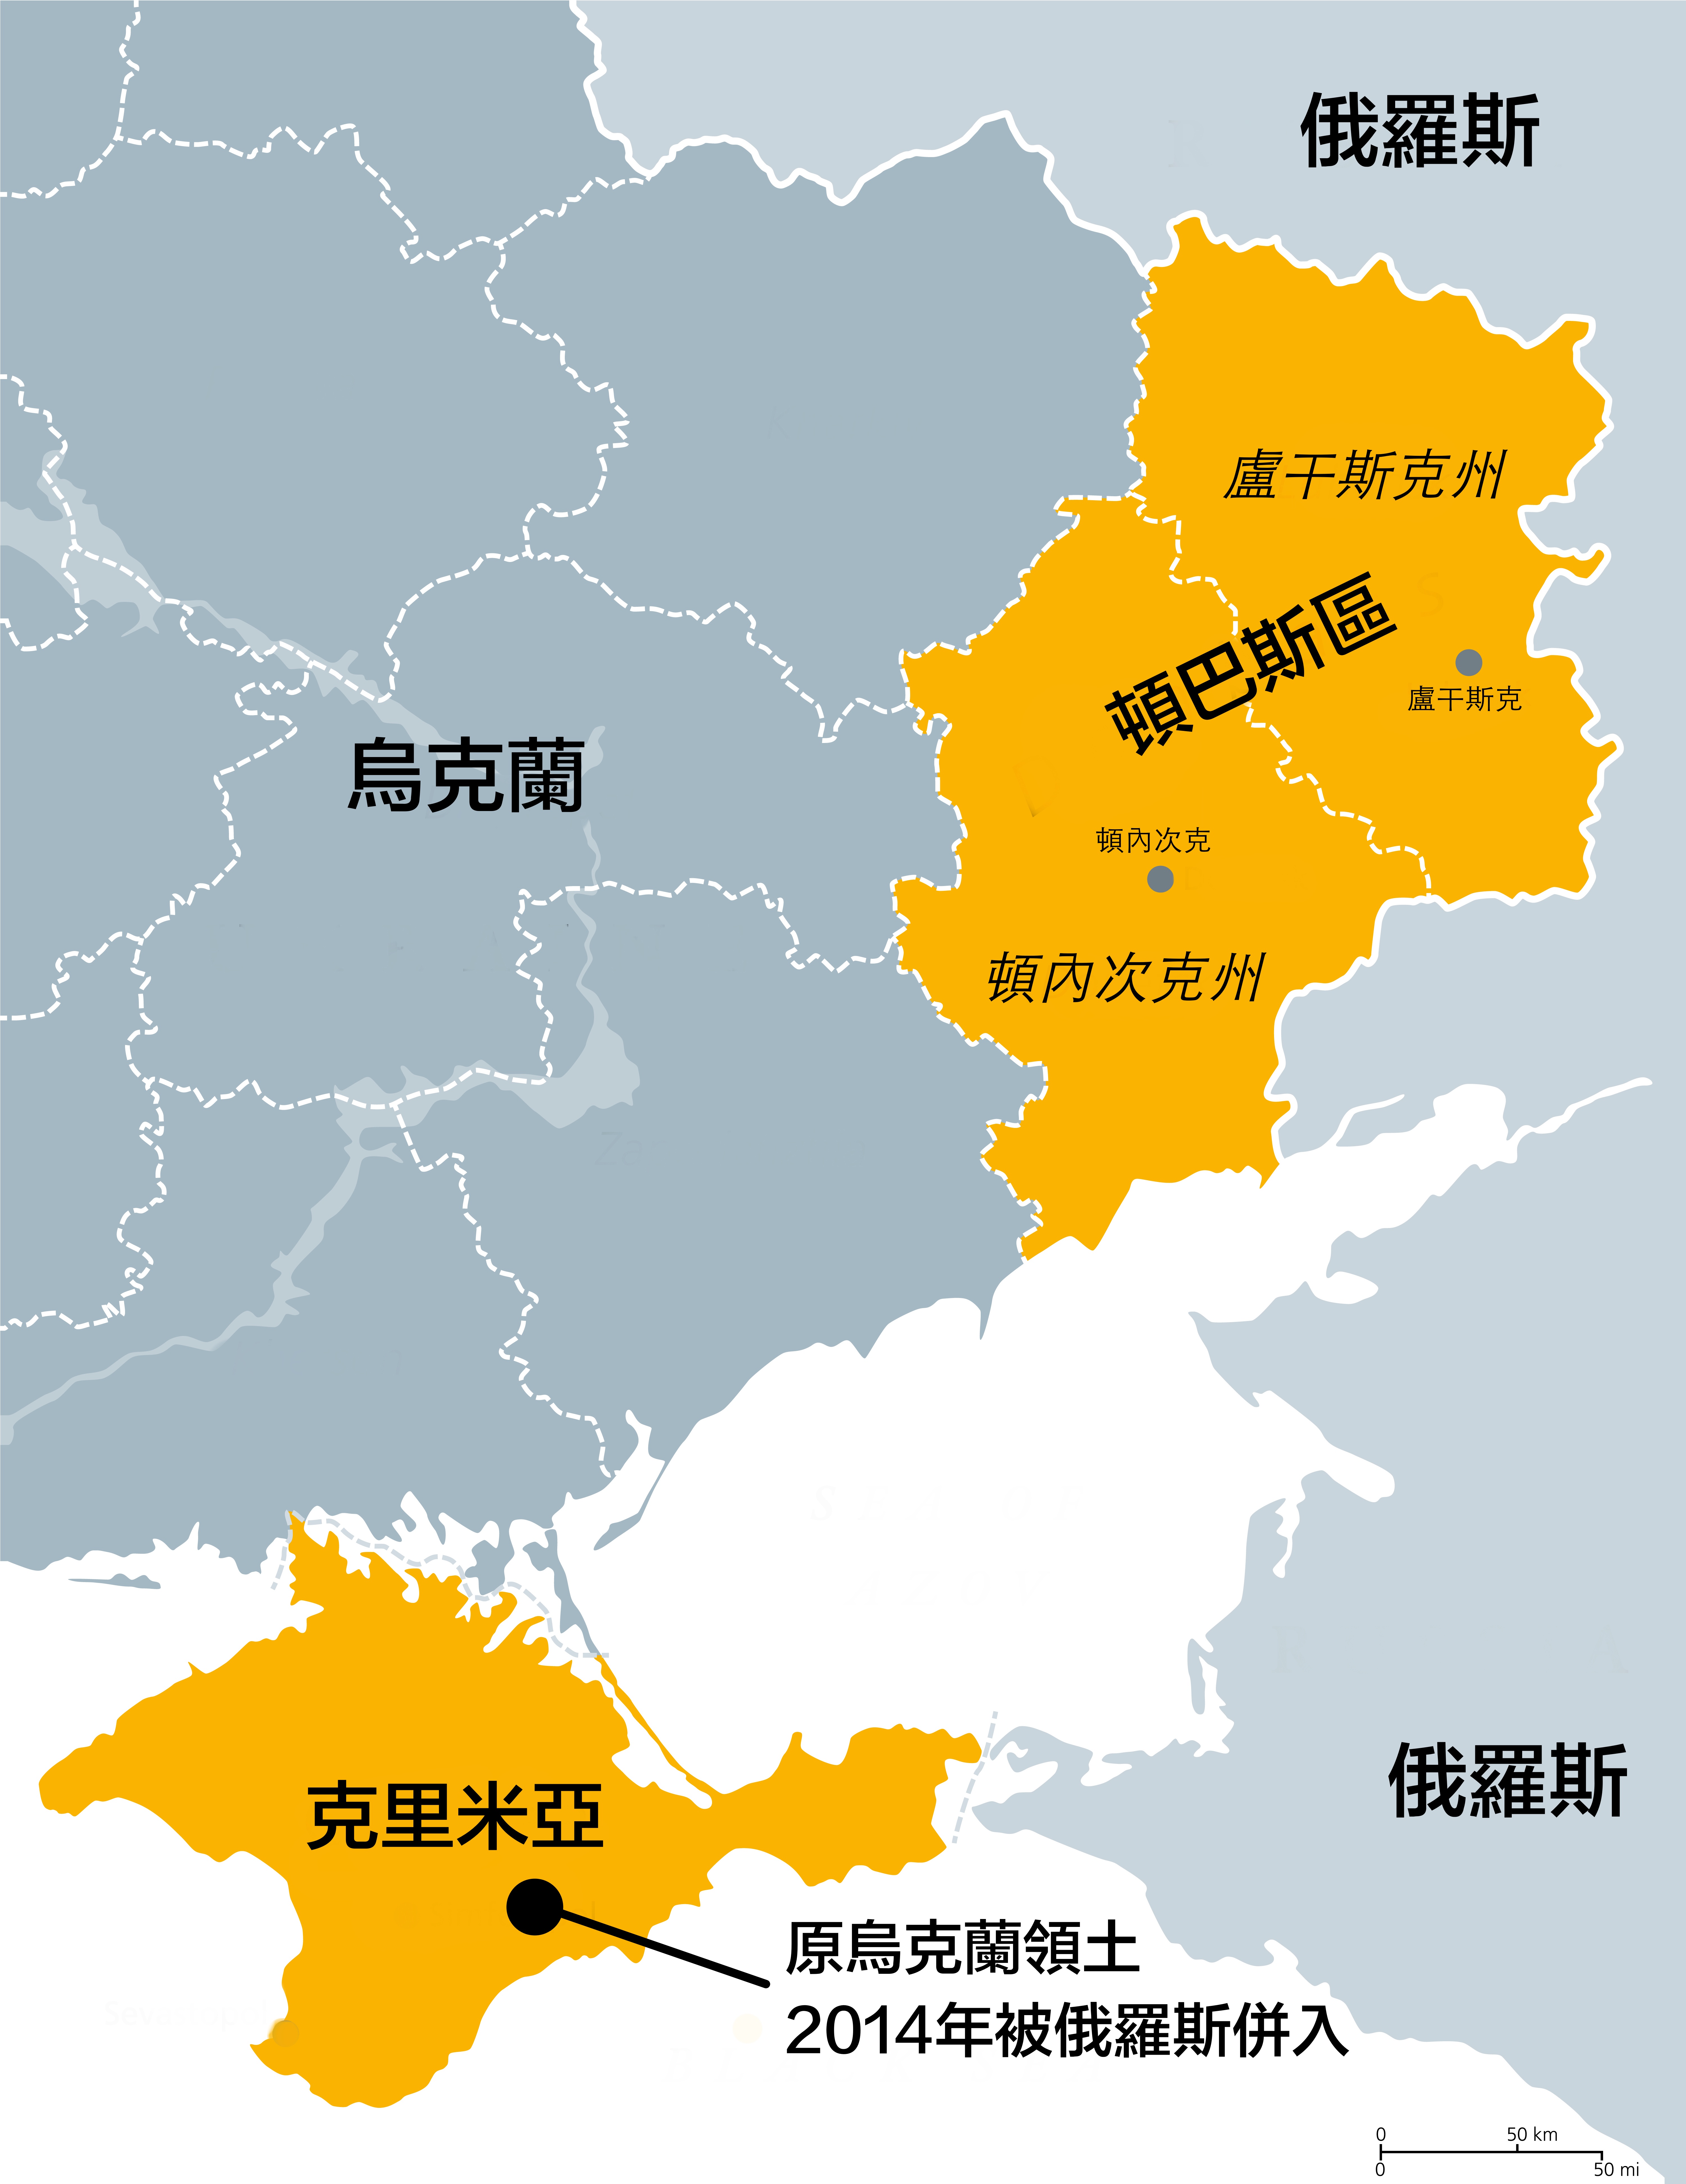 烏克蘭東部的頓巴斯地區中，以俄文為主要語言的頓內次克（Donetsk）和盧干斯克（Luhansk），2014就曾發起公投，單方面宣布脫離烏克蘭。2022年2月22日俄羅斯總統普丁（Vladimir Putin）宣布承認兩個地區為獨立國家，23日宣布與兩國建交。（原圖來源：Getty Images）